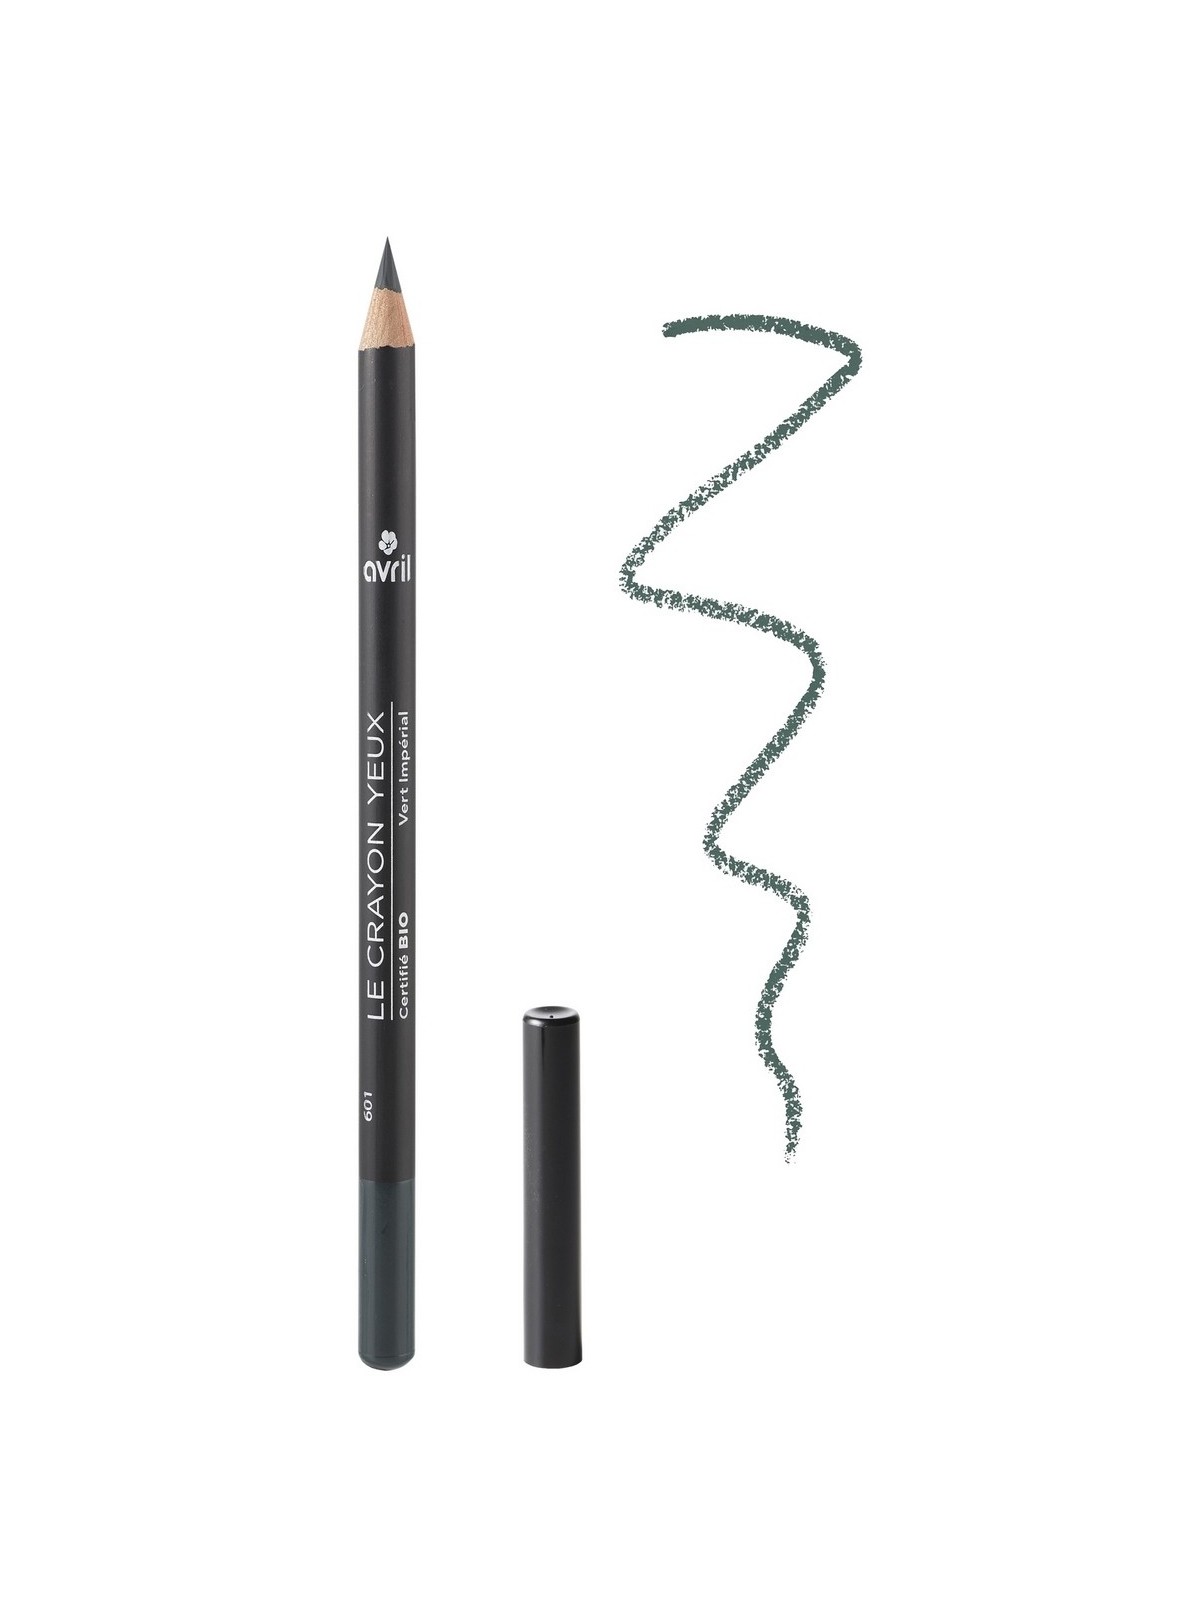 Crayon pour les yeux bio et naturel teinte Vert impérial | 1 vue de face| Tilleulmenthe Boutique de mode femme en ligne